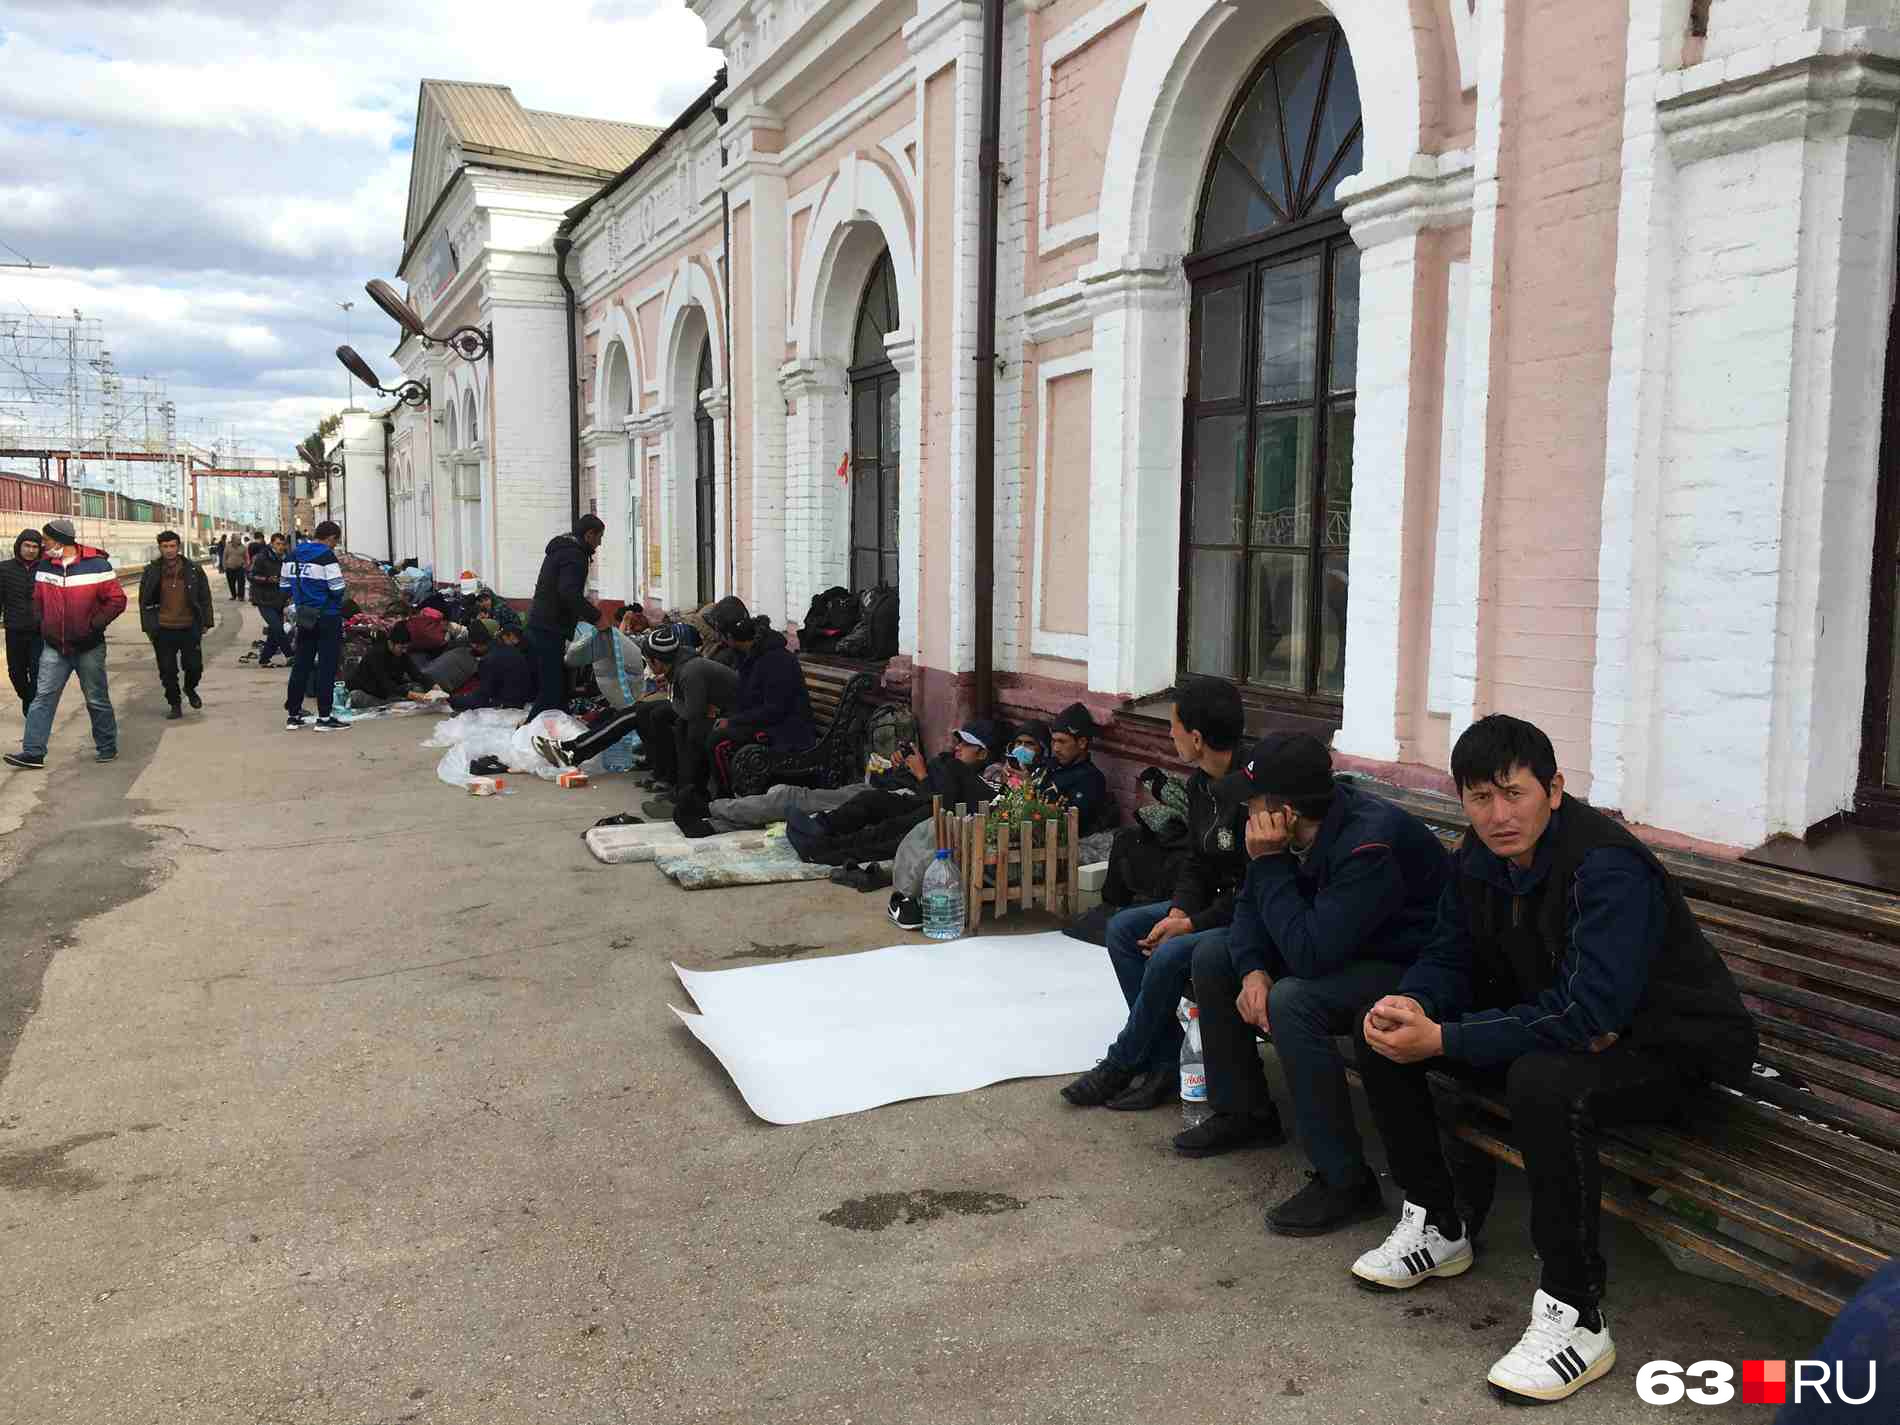 Таджики уезжают на родину. Мигранты в России. Мигранты на вокзале. Мигранты Россия вокзал. Мигранты в Москве.